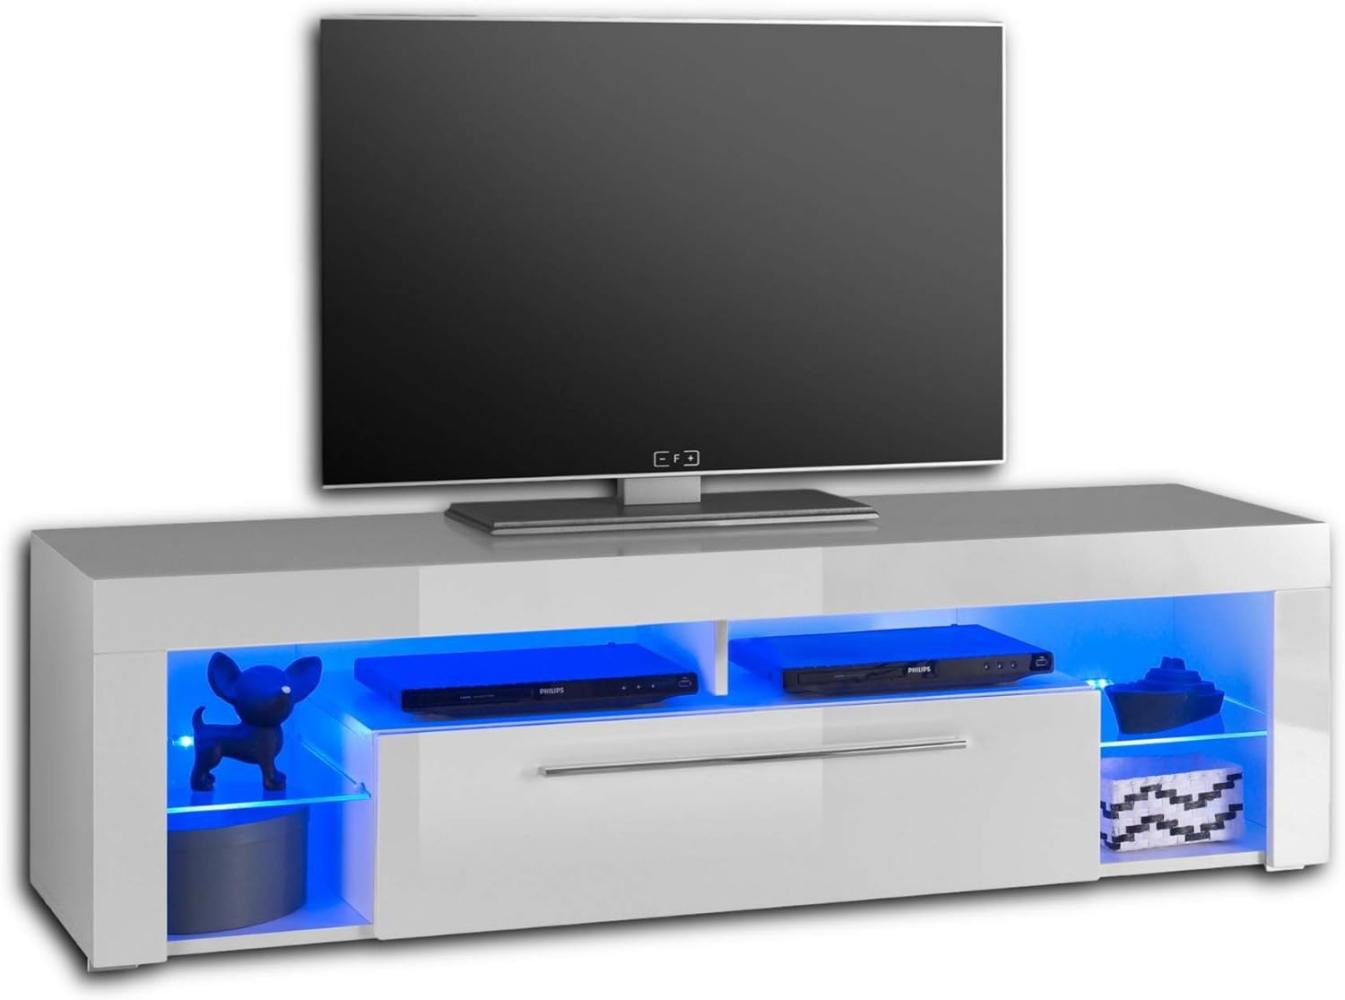 GOAL Lowboard in Hochglanz Weiß mit blauer LED-Beleuchtung - hochwertiges TV-Board mit viel Stauraum für Ihr Wohnzimmer - 153 x 44 x 44 cm (B/H/T) Bild 1